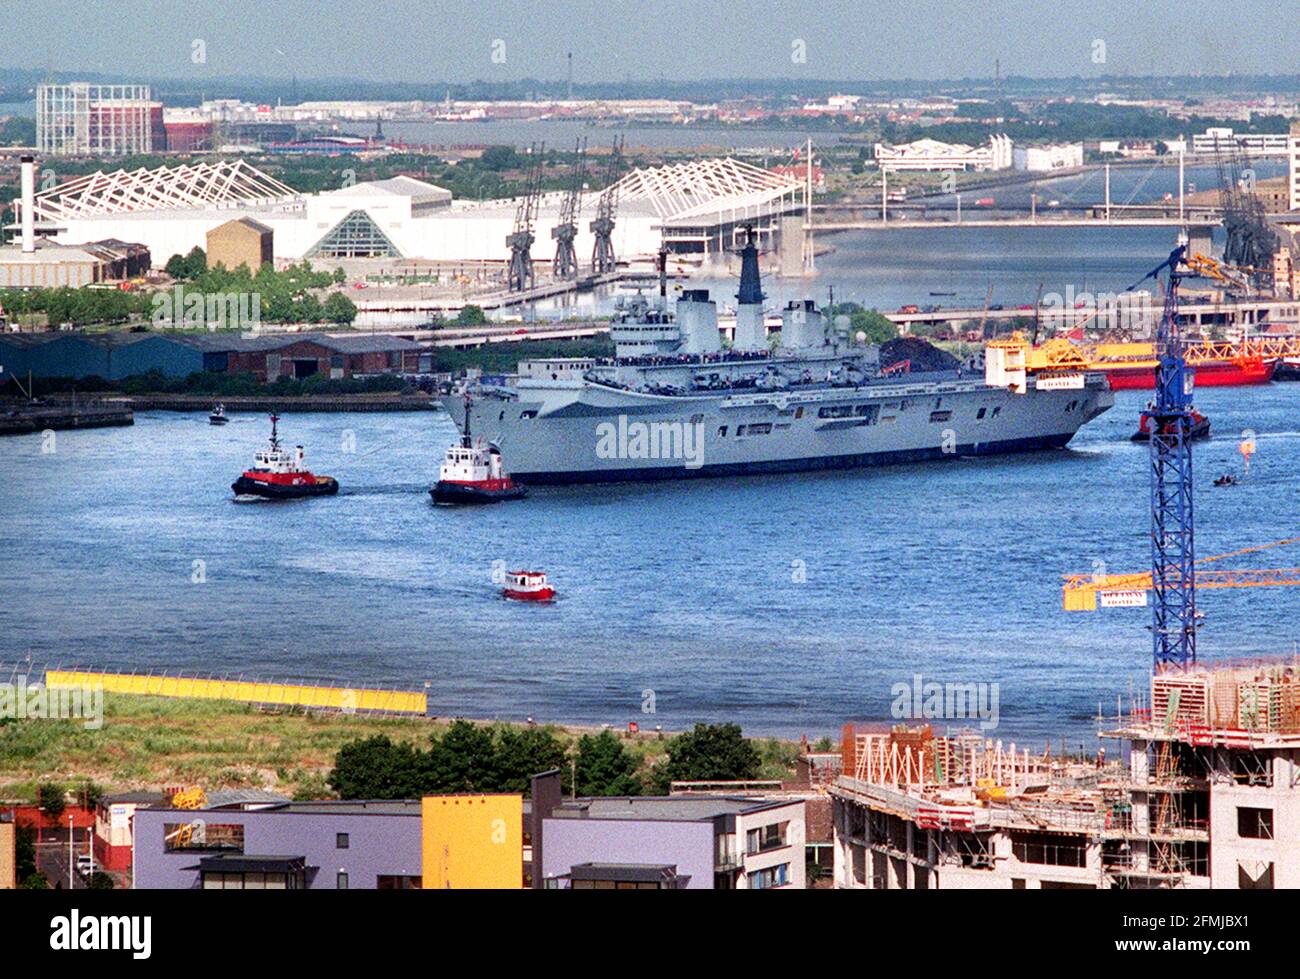 La portaerei HMS Invincible luglio 2000 vela su Fiume Tamigi Foto Stock